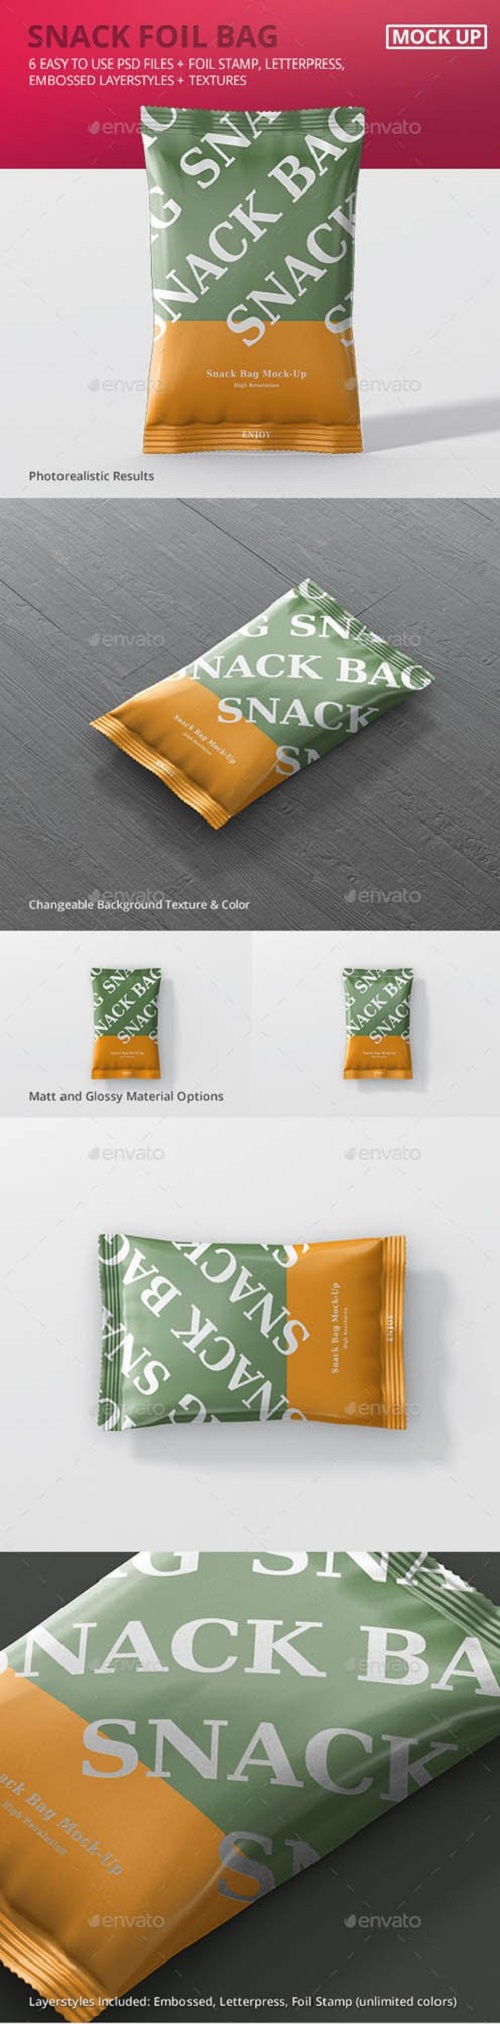 Snack Foil Bag Mockup 20230164